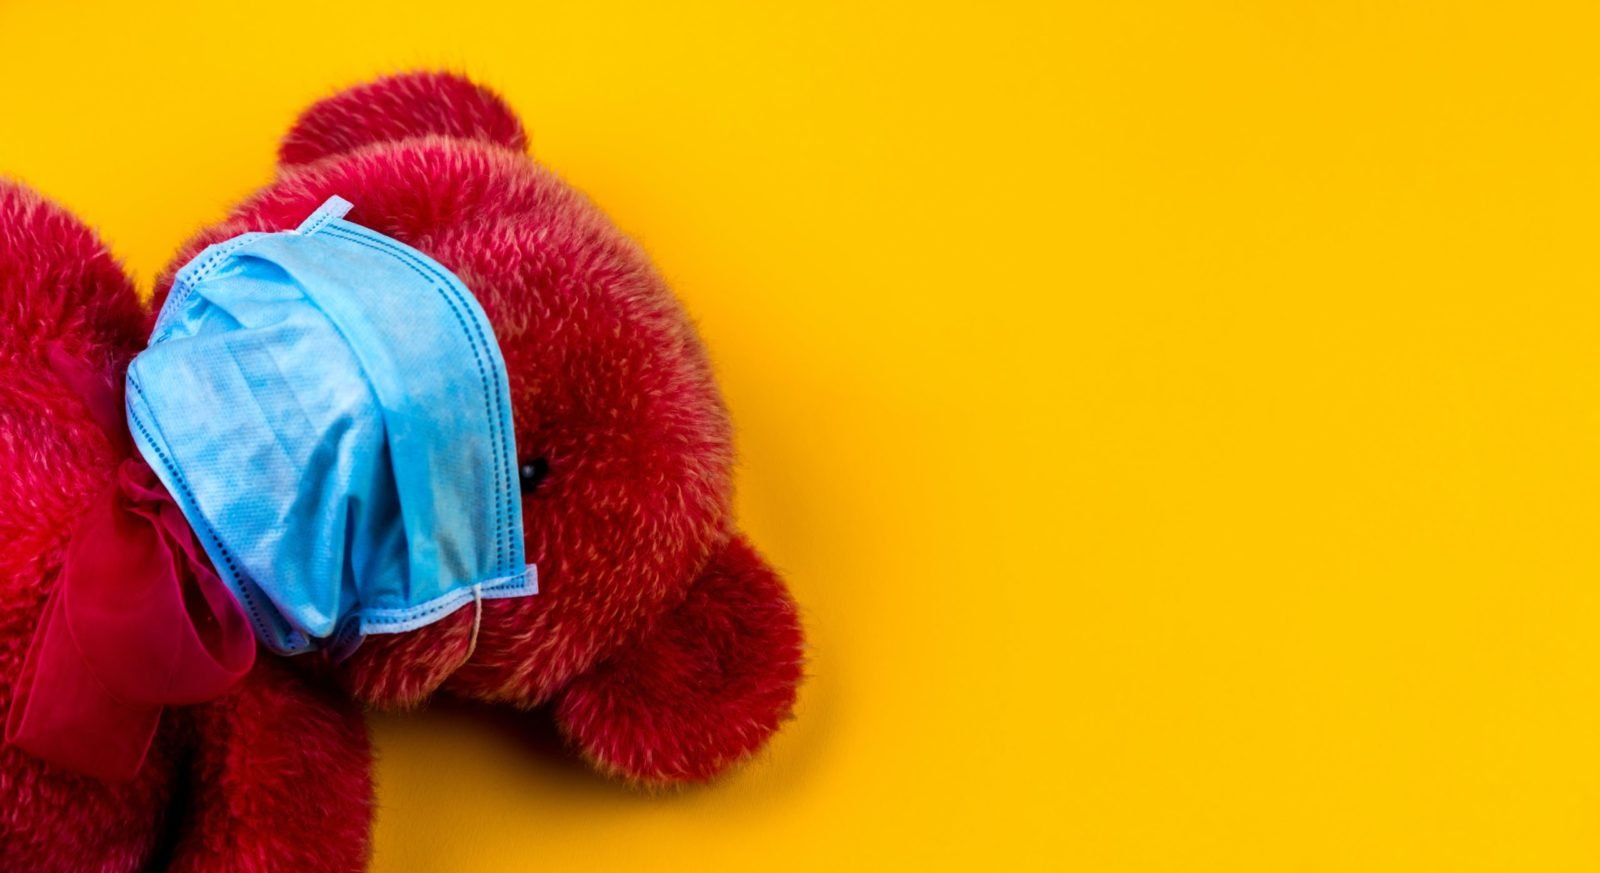 Ein roter Teddybär mit blauer OP-Maske auf gelben Hintergrund.